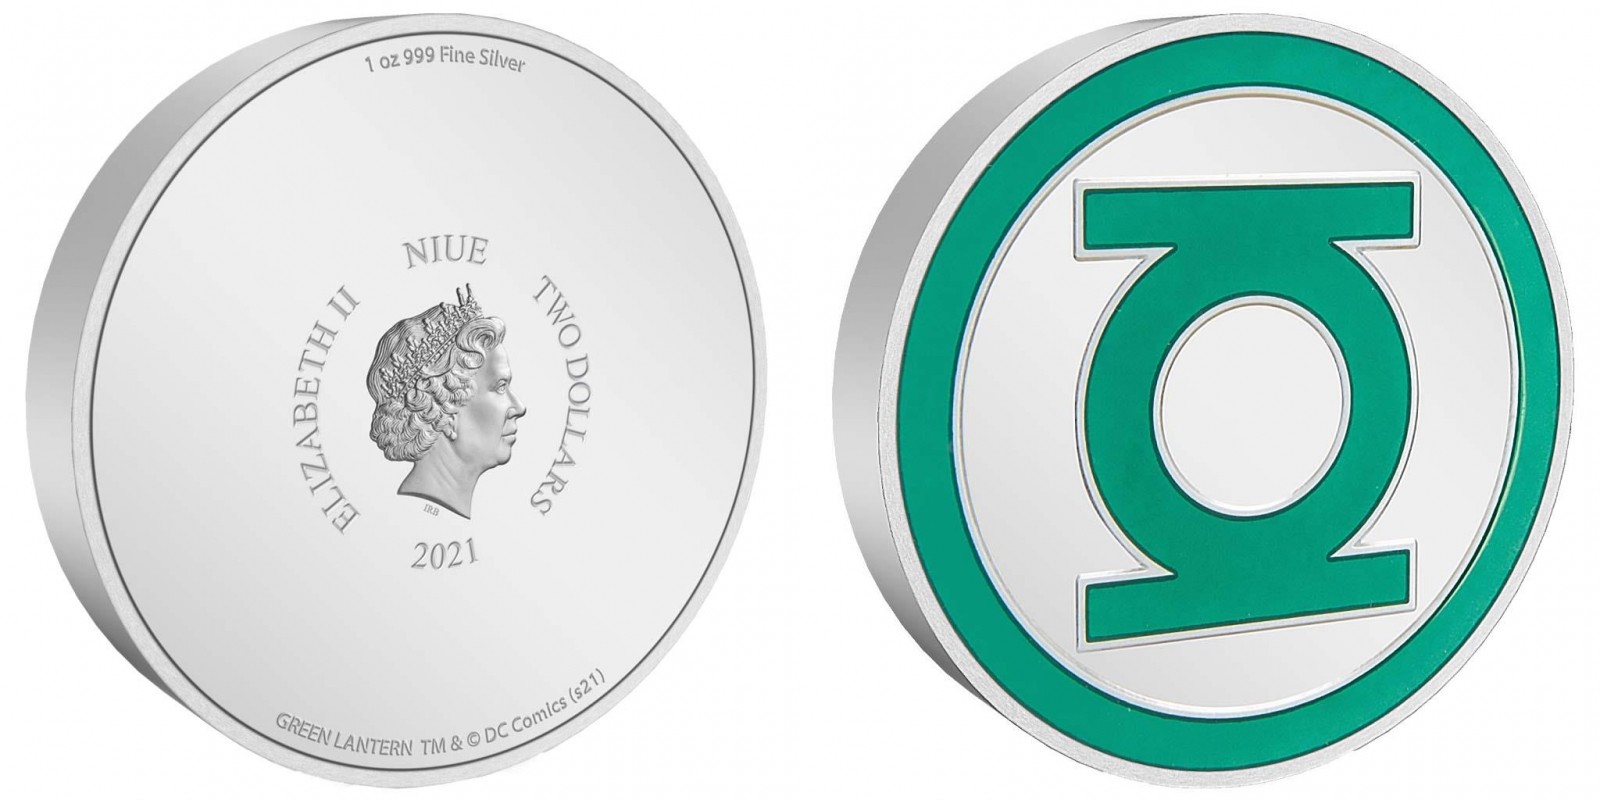 niue-2021-logo-green-lantern